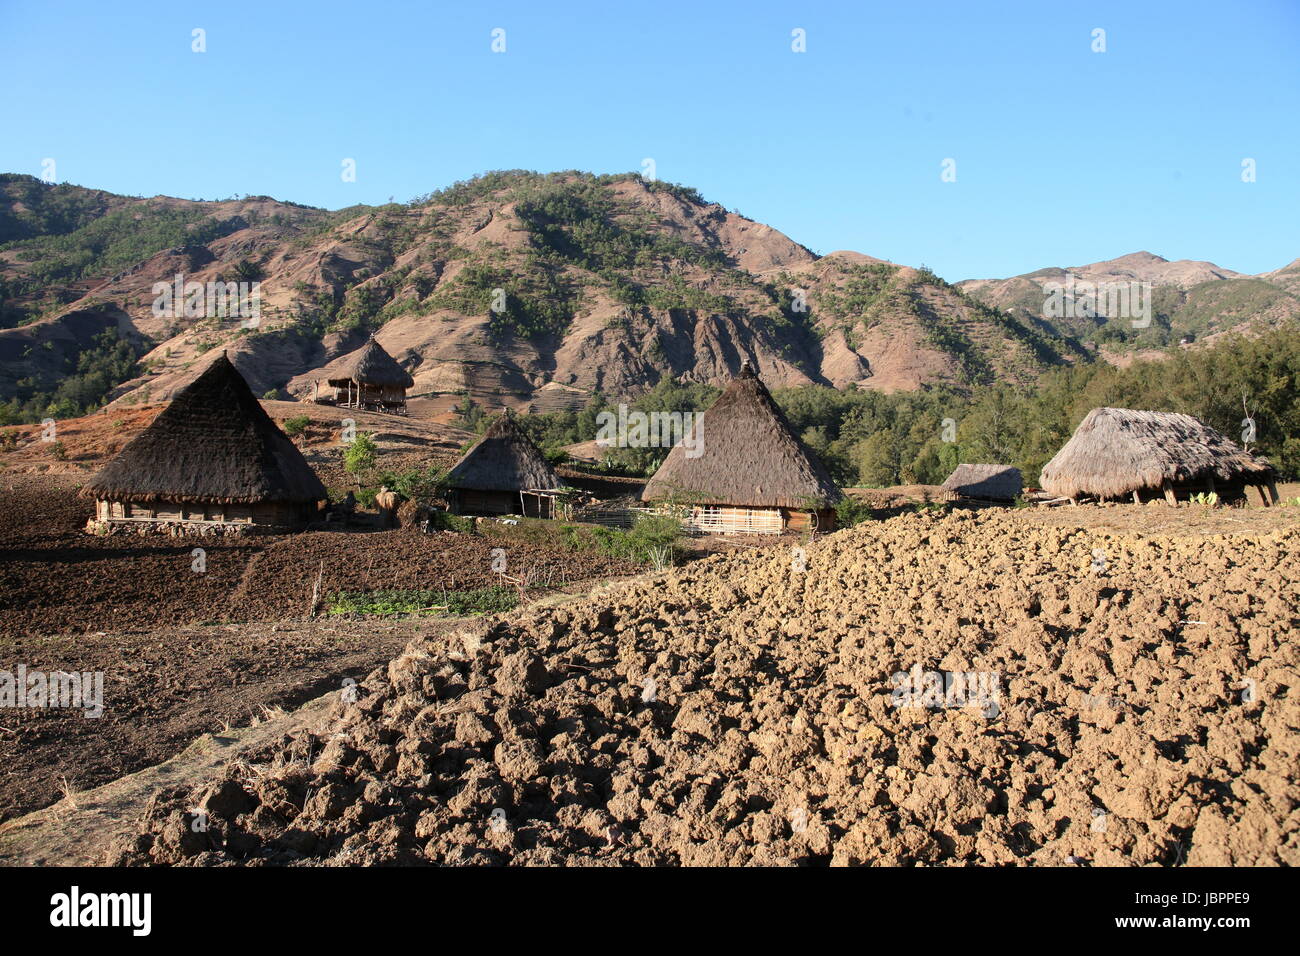 Die Berglandschaft beim Bergdorf Maubisse suedlich von Dili in Timor Ost auf der in zwei getrennten Insel Timor nell Asien. Foto Stock